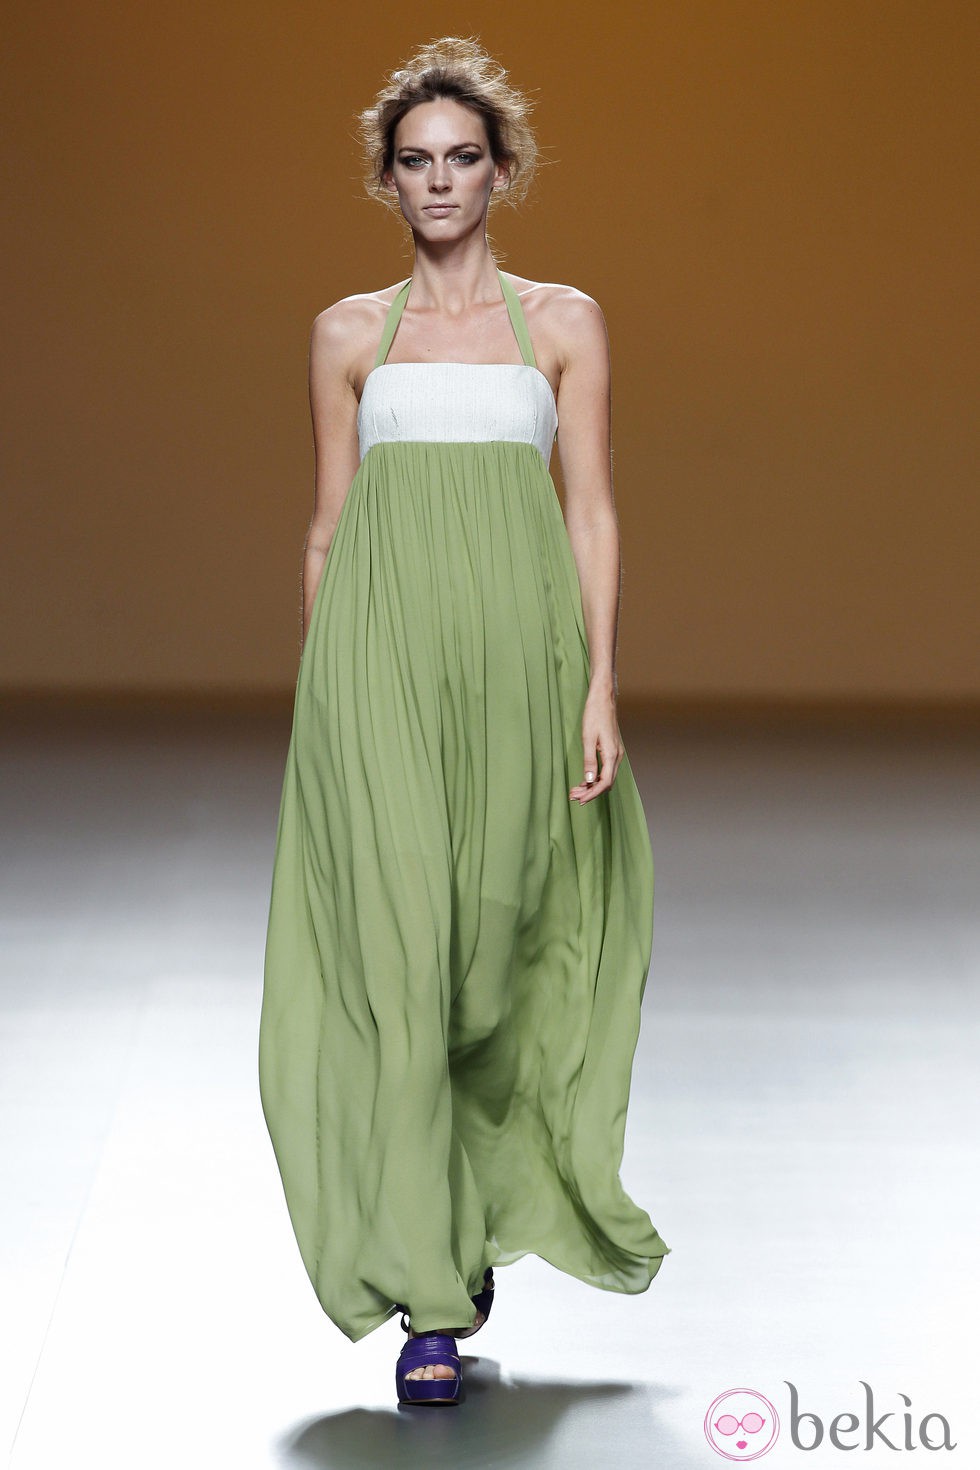 Vestido vaporoso verde de la colección primavera/verano 2014 de Sara Coleman en Madrid Fashion Week